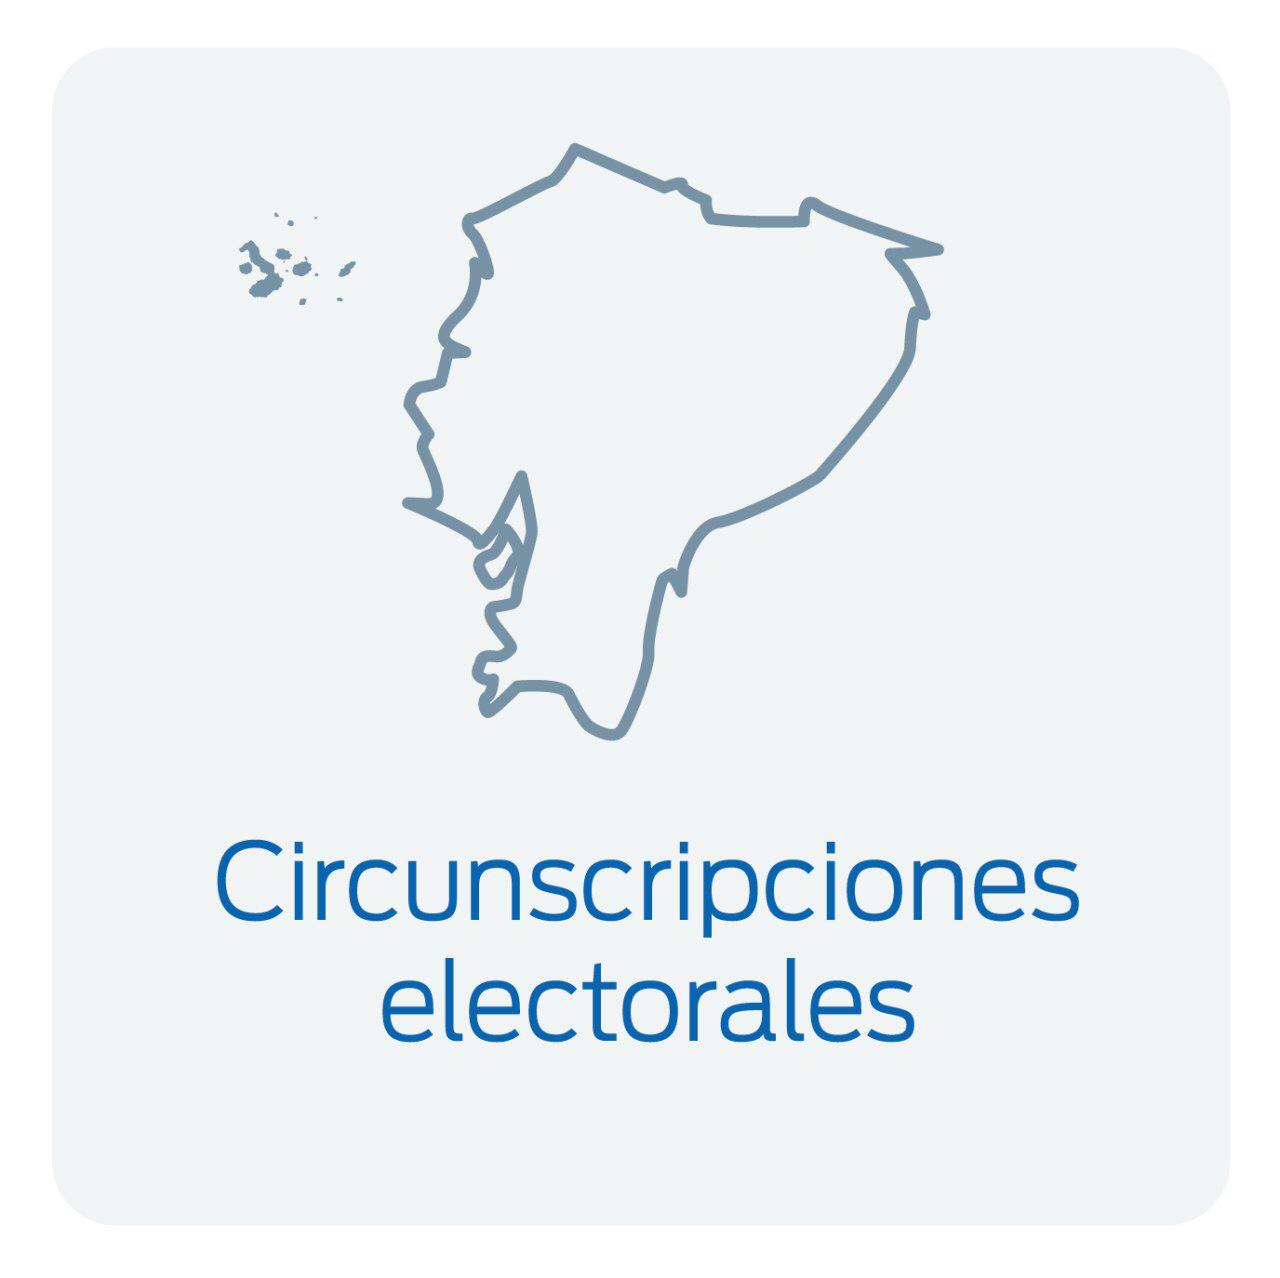 circunscripciones electorales